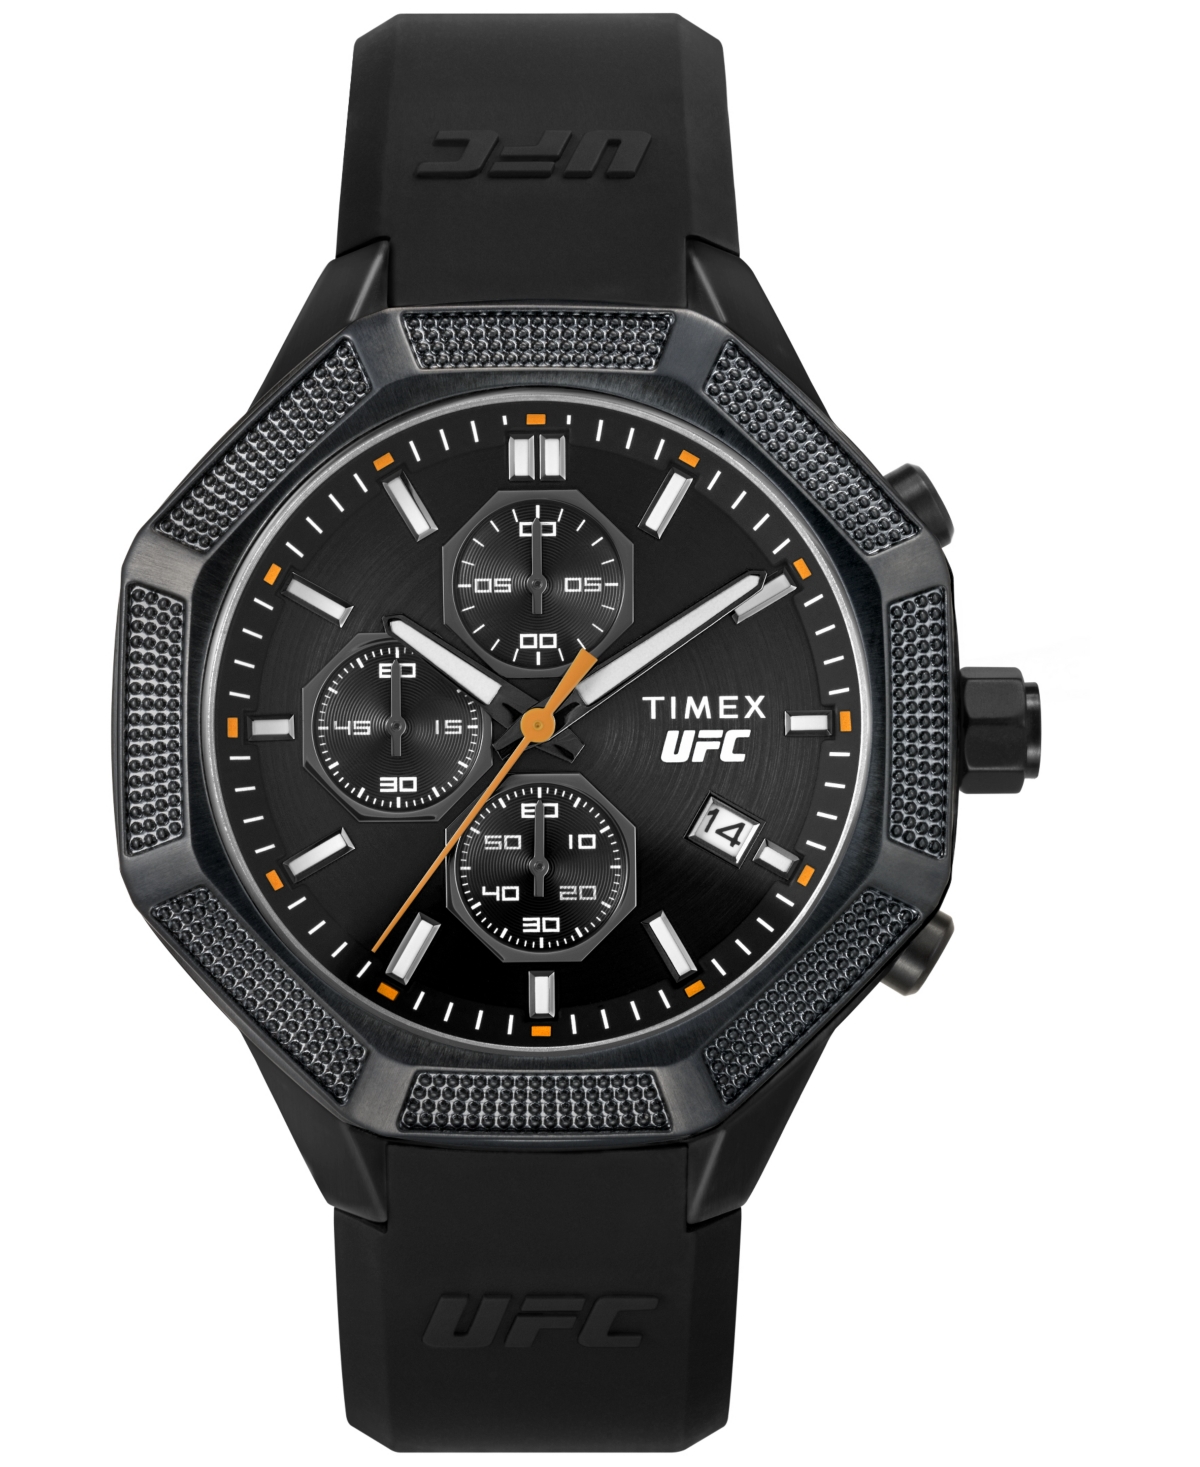 Ufc Men's King Analog Black Silicone Watch, 45mm - Black